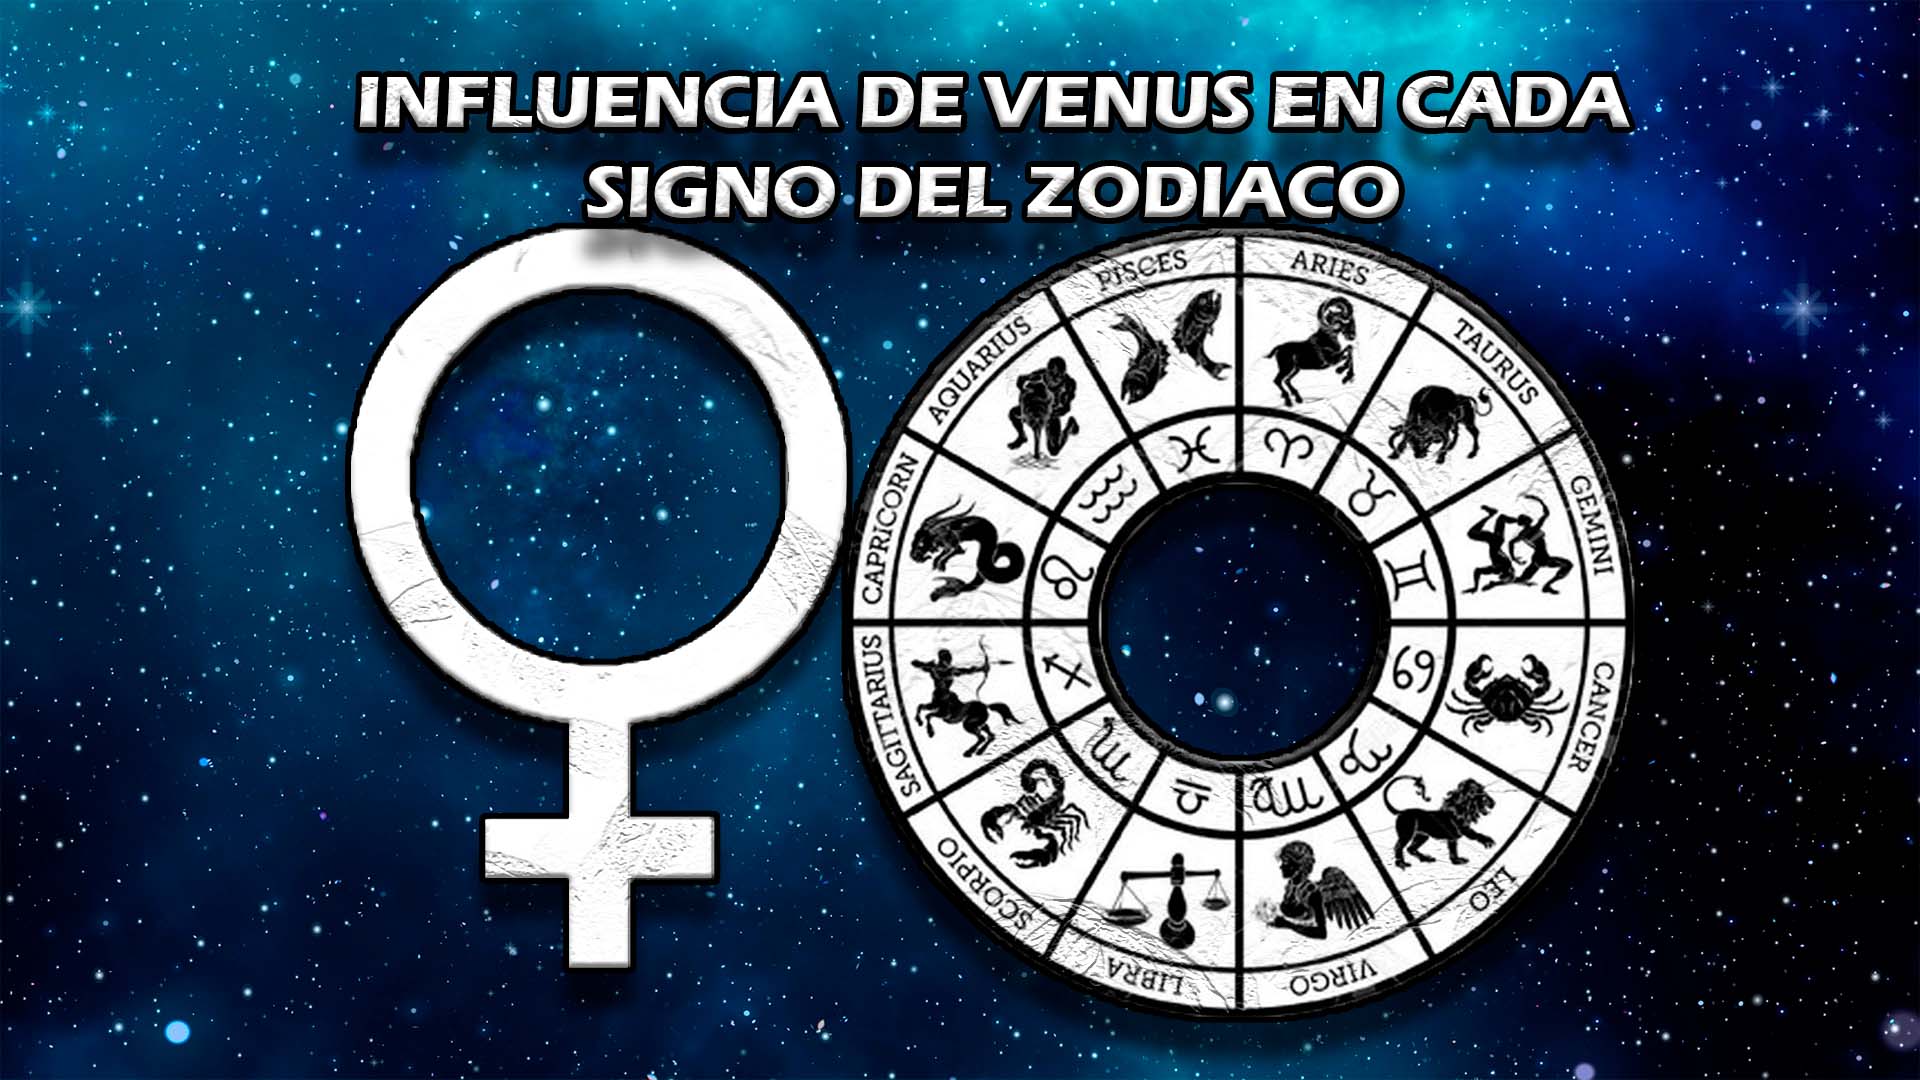 Influencia de Venus en cada signo del zodiaco